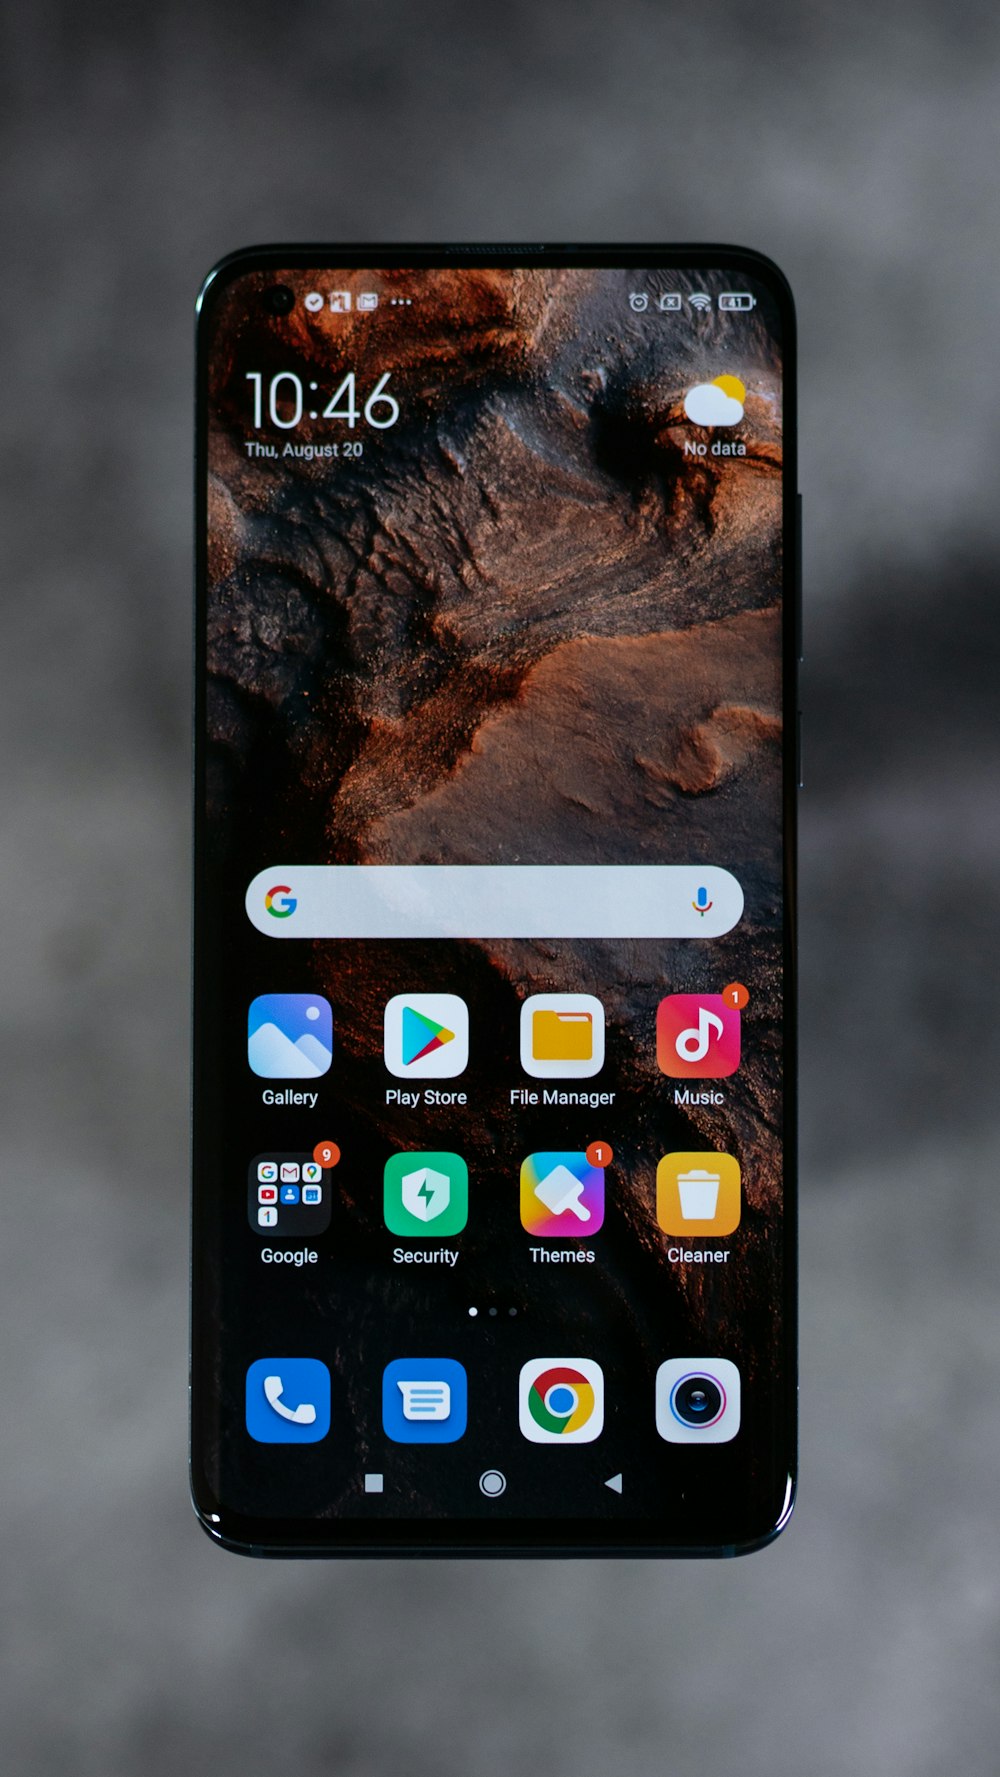 iPhone-Bildschirm mit Symbolen auf dem Bildschirm